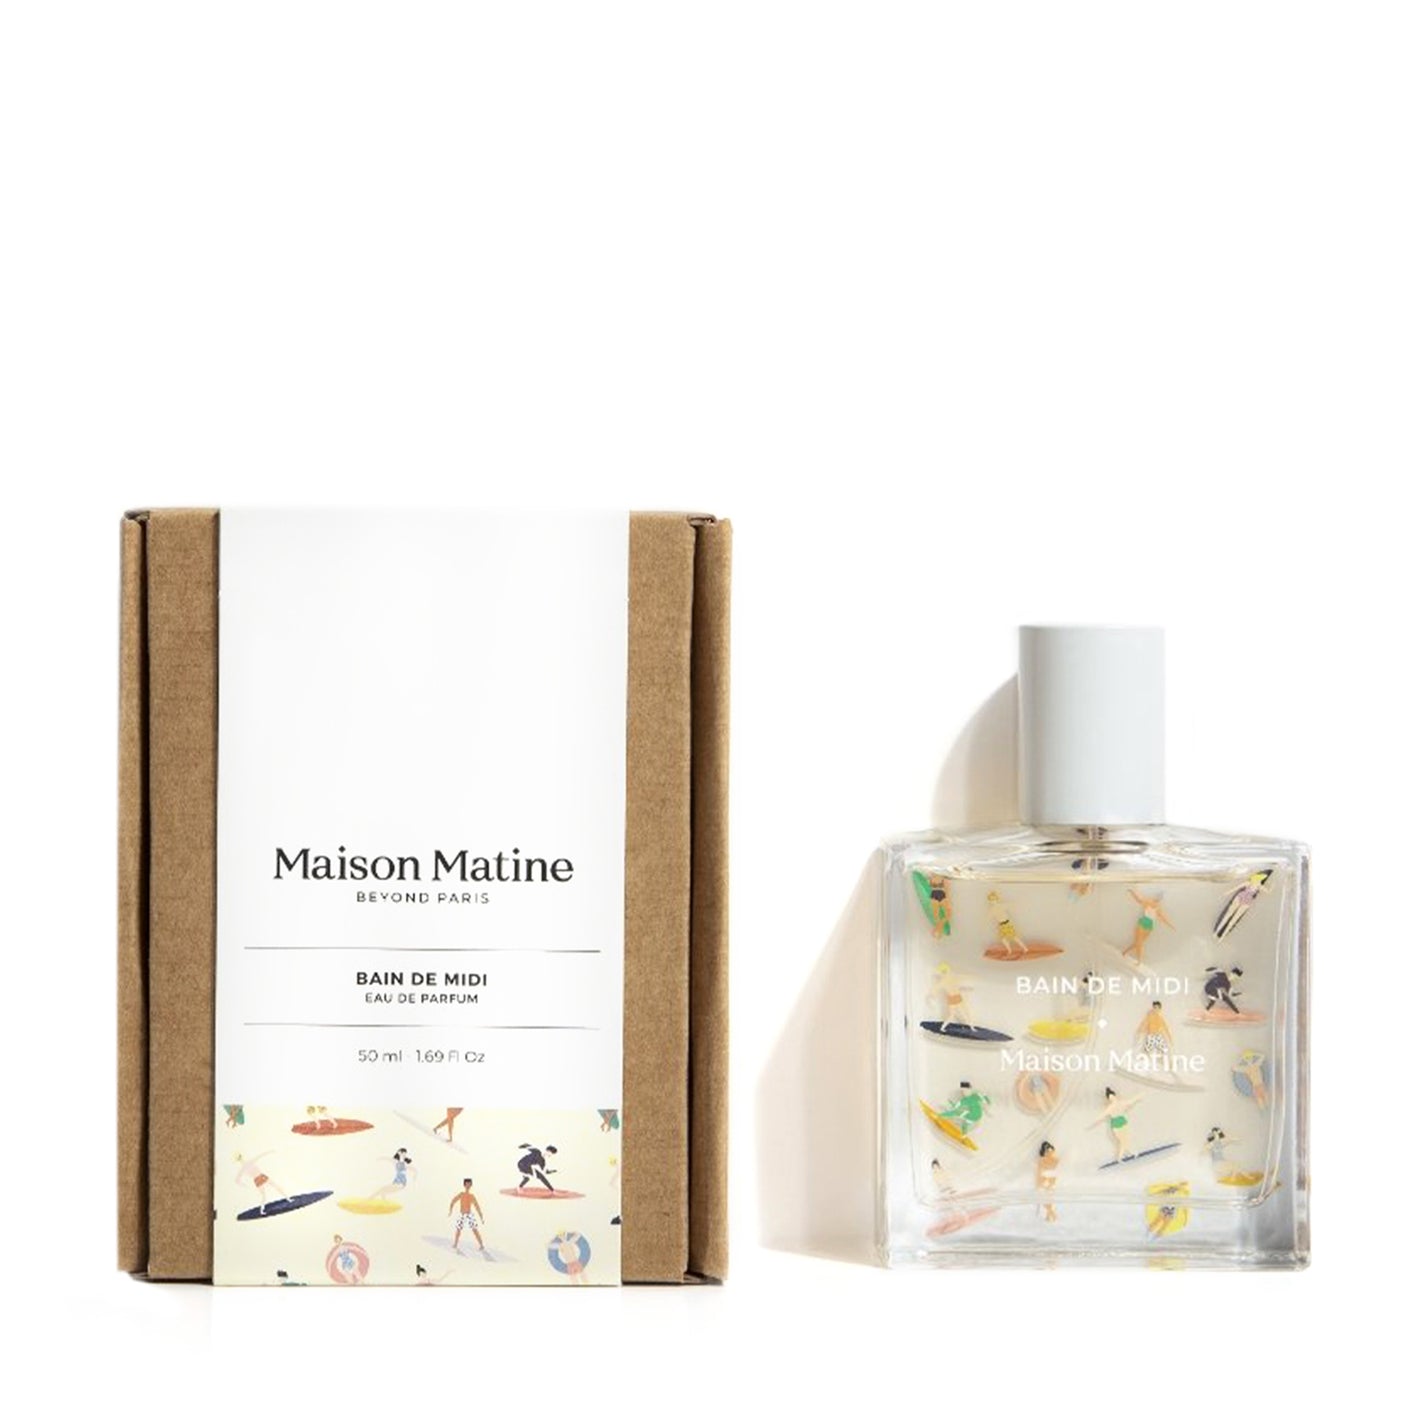 Maison Matine Bain de Midi Eau de Parfum - 50ml